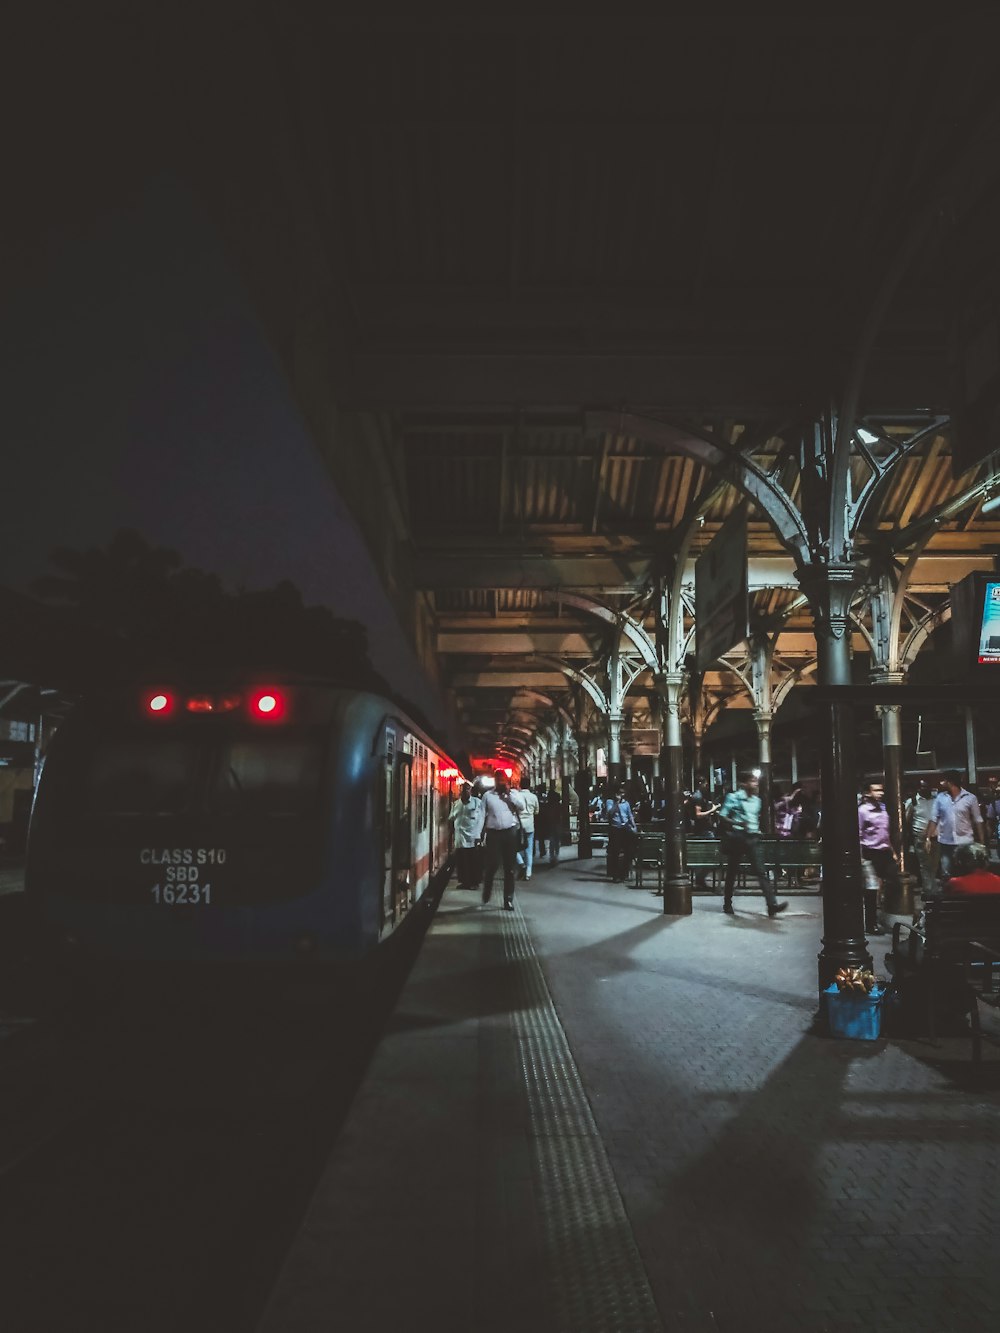 un treno che entra in una stazione ferroviaria di notte